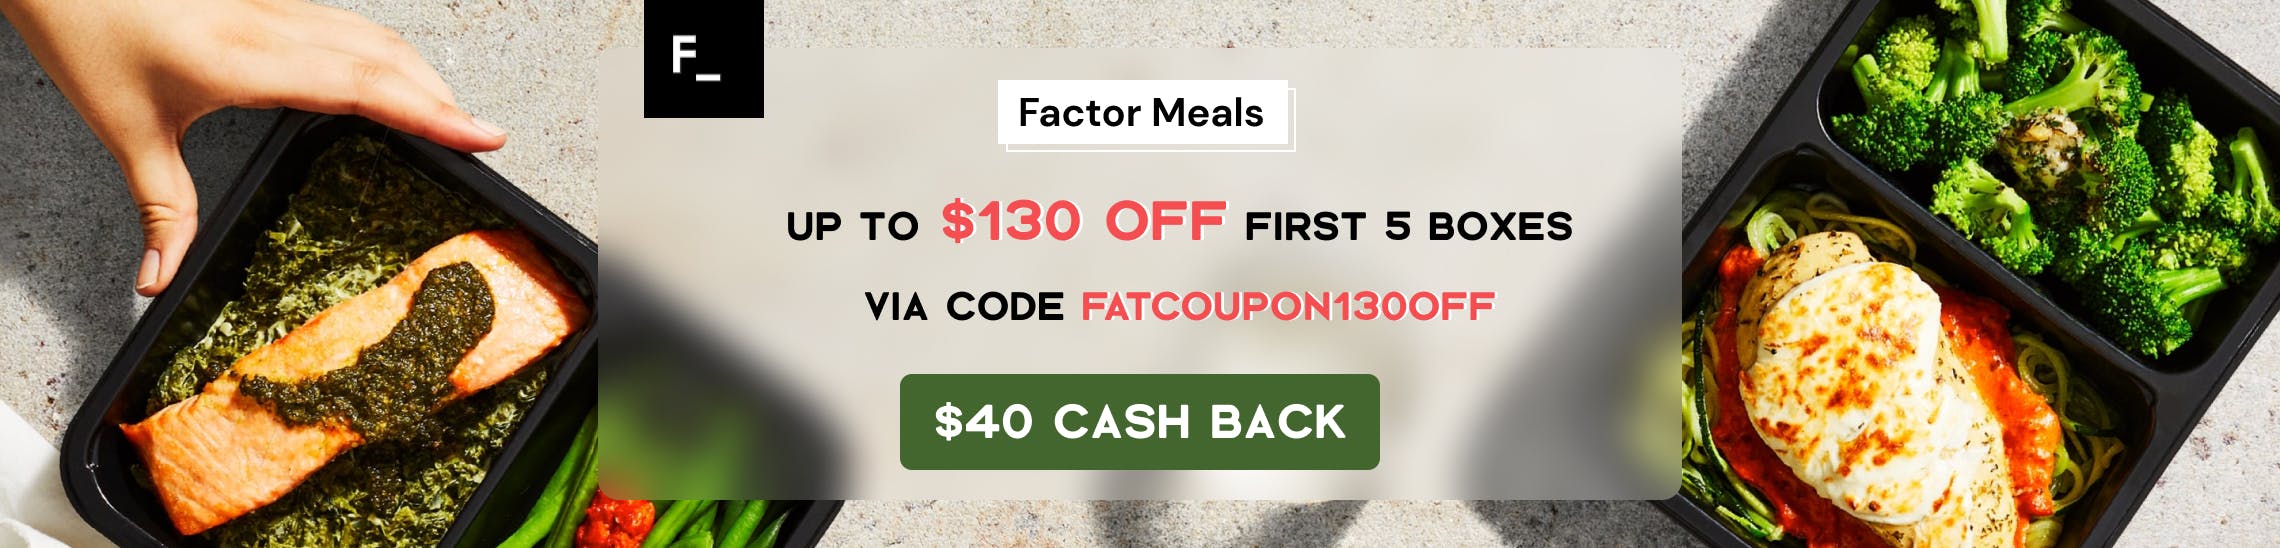 Factor Meals Promo Codes & Cash Back